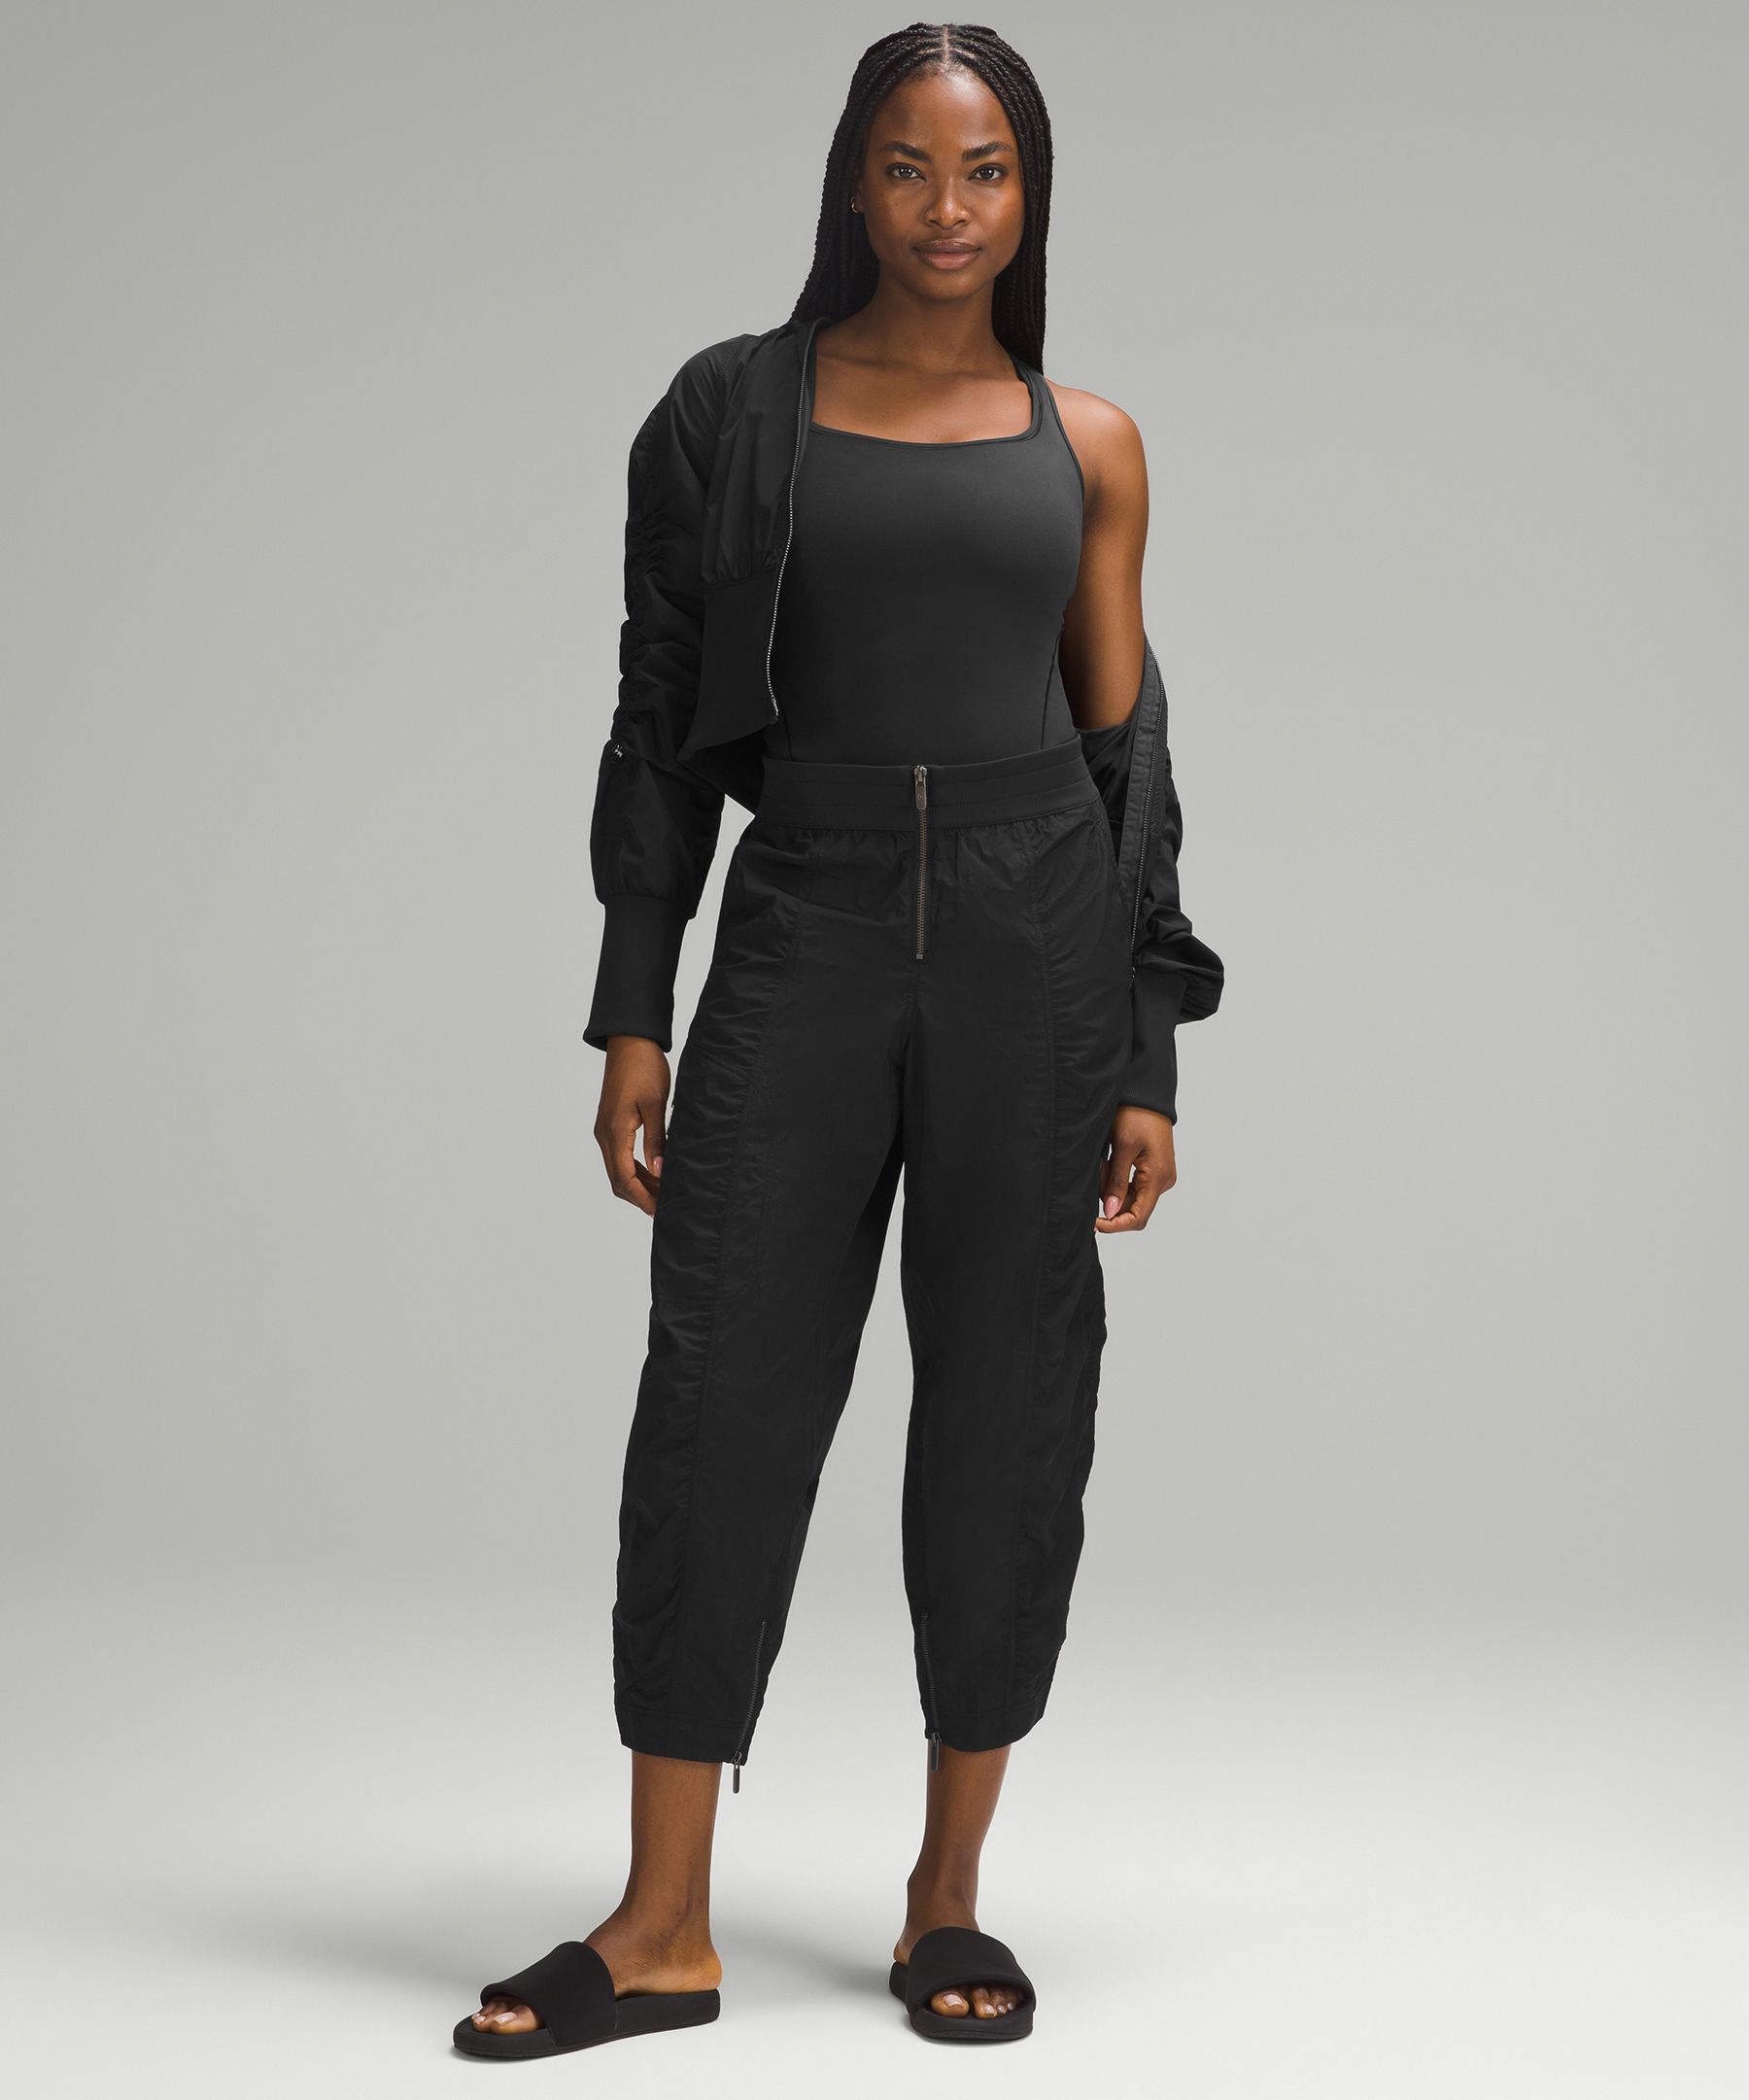 Black Bustier Bodysuit - Black Bodysuit - Sleeveless Bodysuit - Lulus